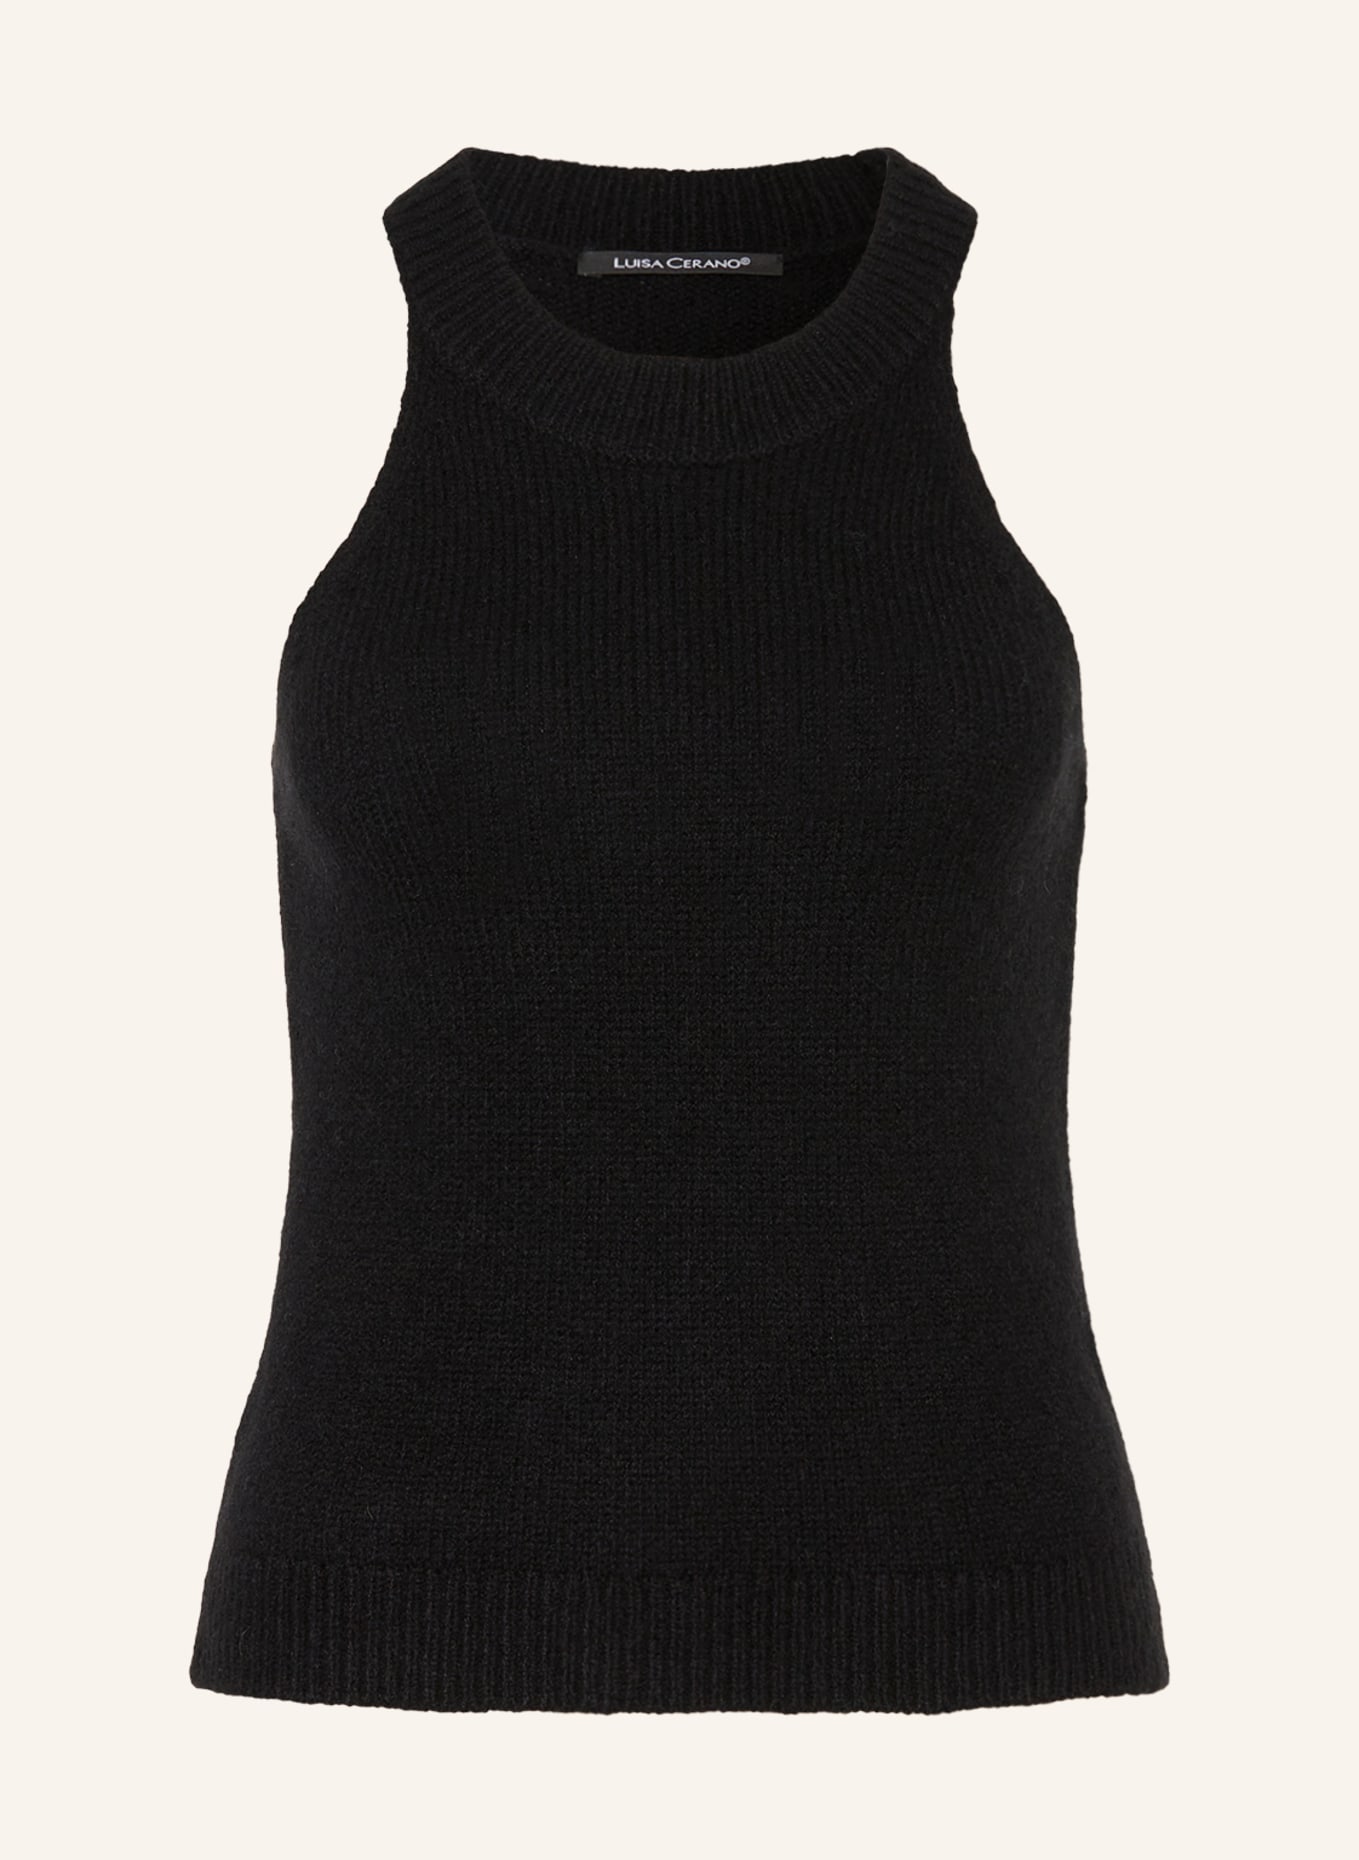 LUISA CERANO Knit top with alpaca, Color: BLACK (Image 1)